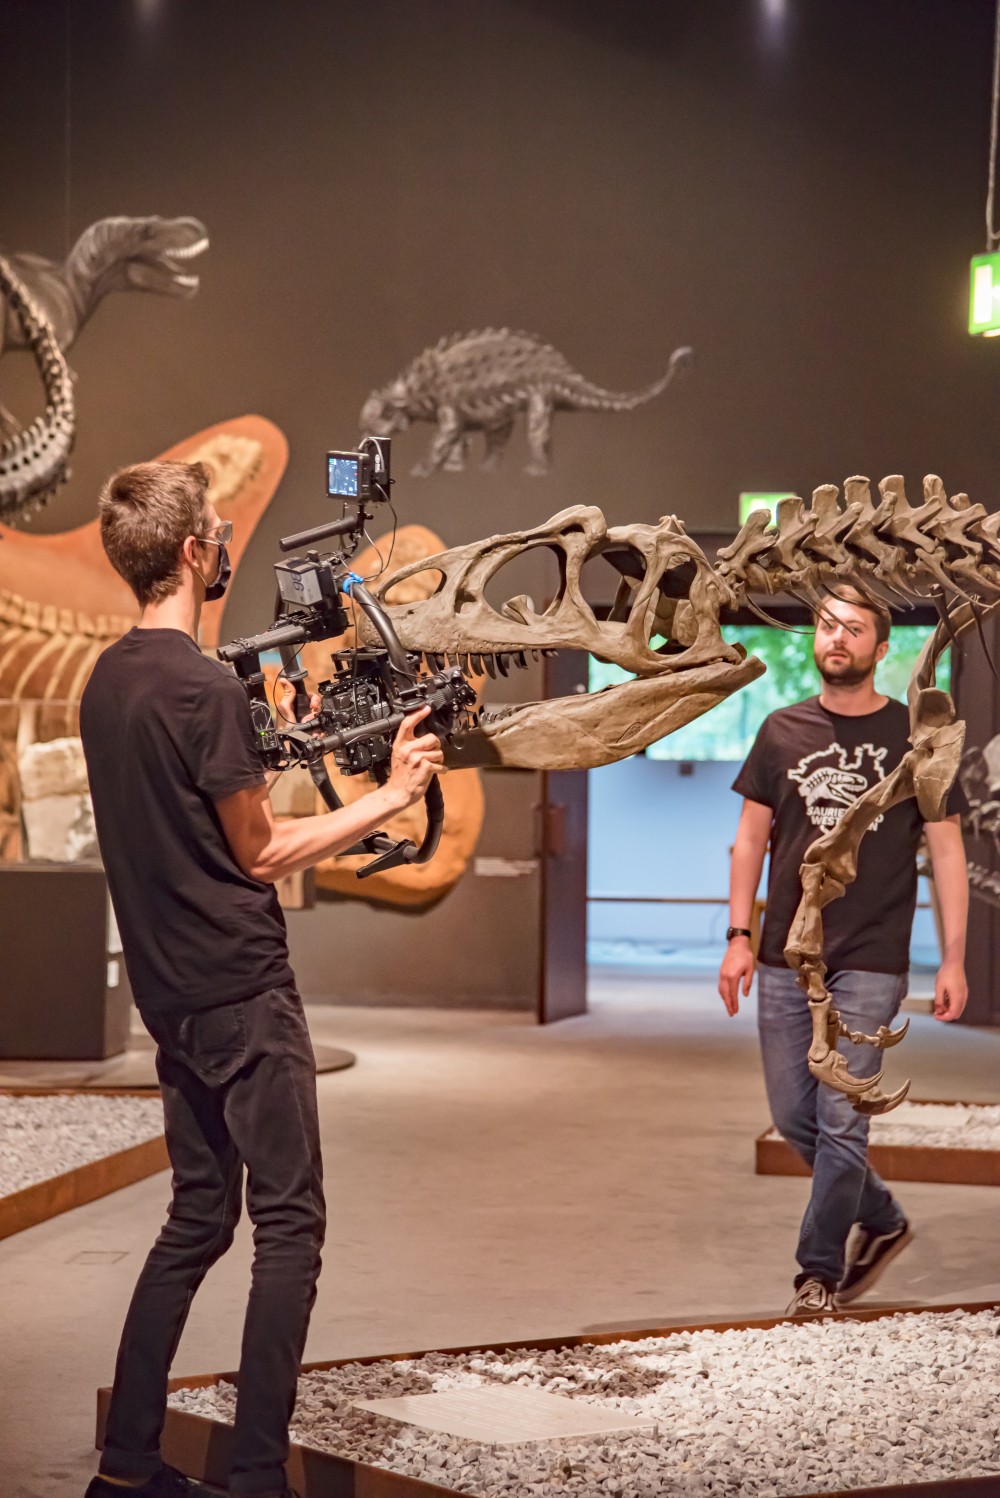 Mit manchem Augenzwinkern gibt Modera¬tor Fabian Nolte (r.) Einblicke in die Welt der Paläontogie wie hier im LWL-Museum für Naturkunde in Münster. Foto: LWL/Emad Daood